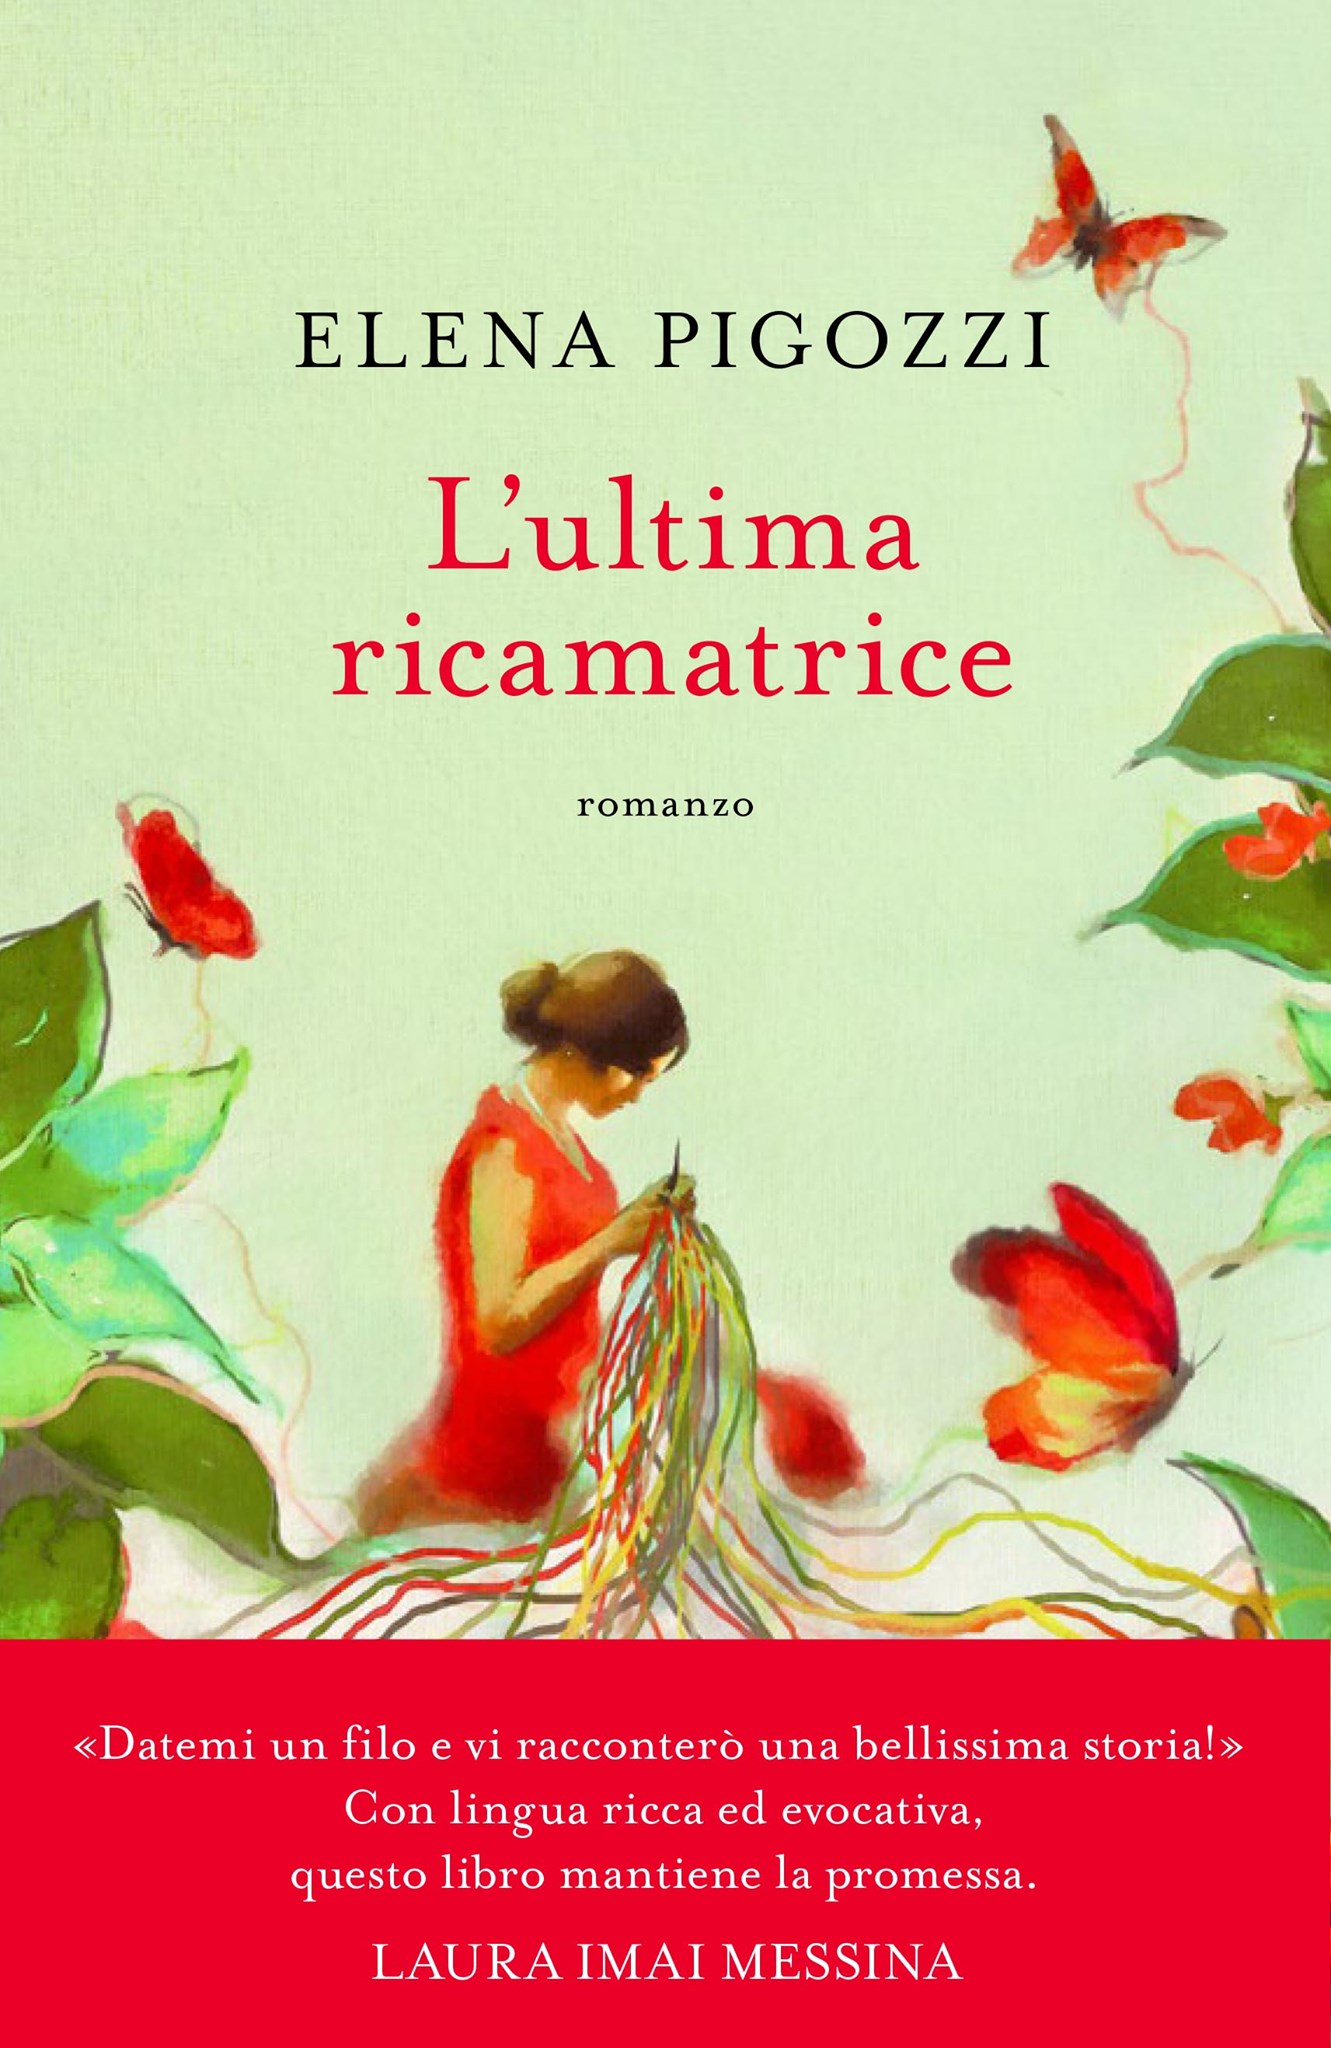 Elena Pigozzi presenta il romanzo “L’ultima ricamatrice”